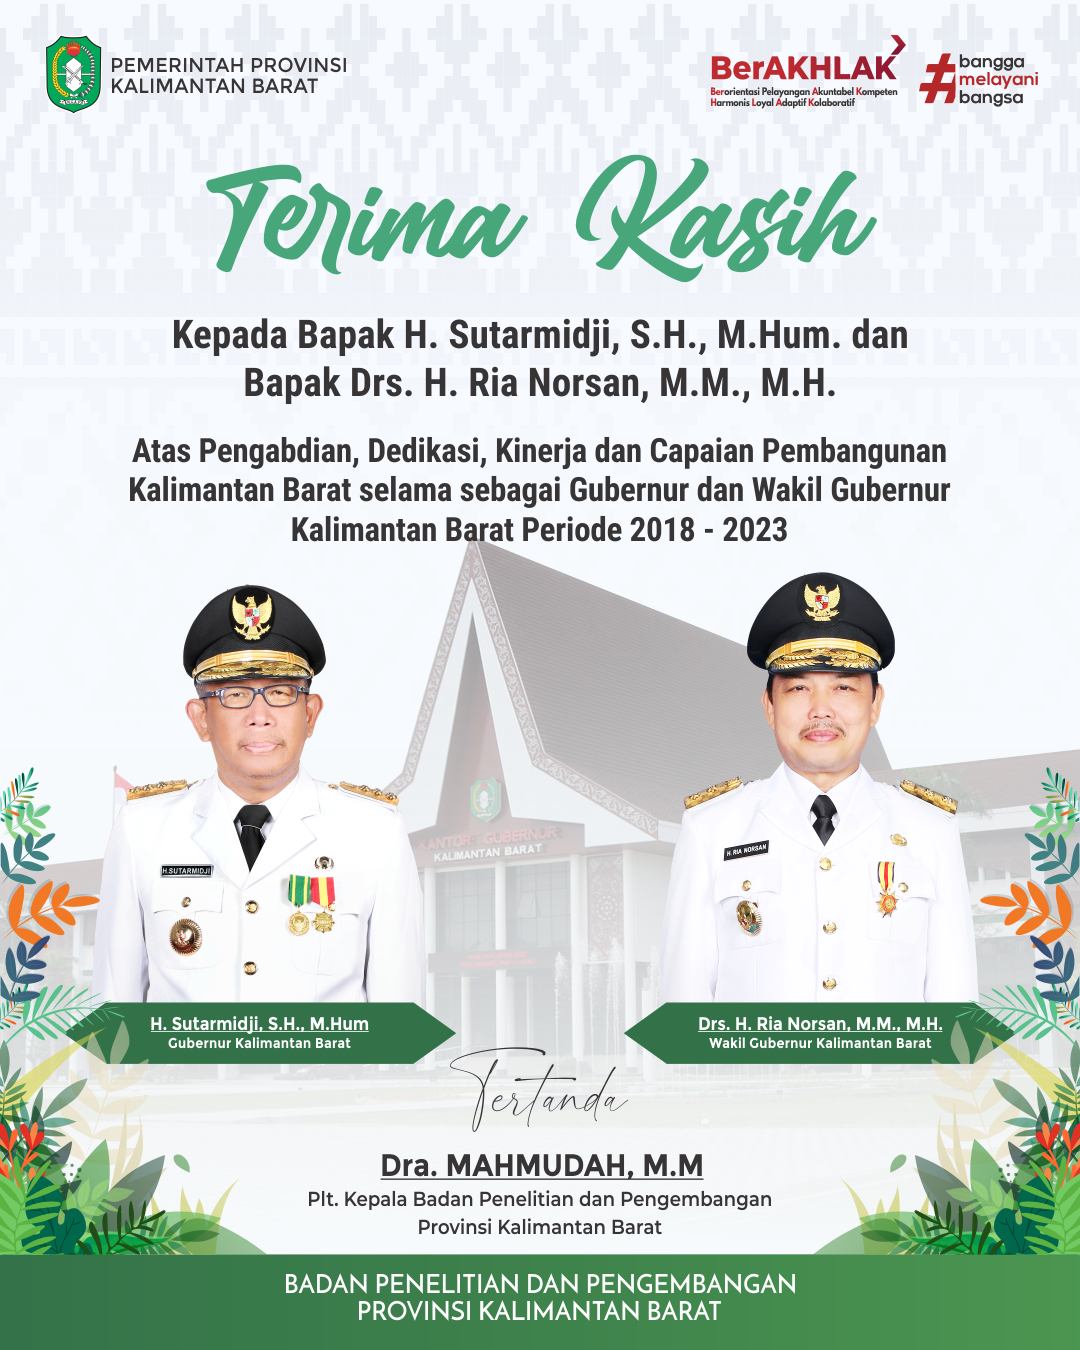 Ucapan Terima Kasih kepada Gubernur dan Wakil Gubernur Kalimantan Barat Periode 2018 - 2023